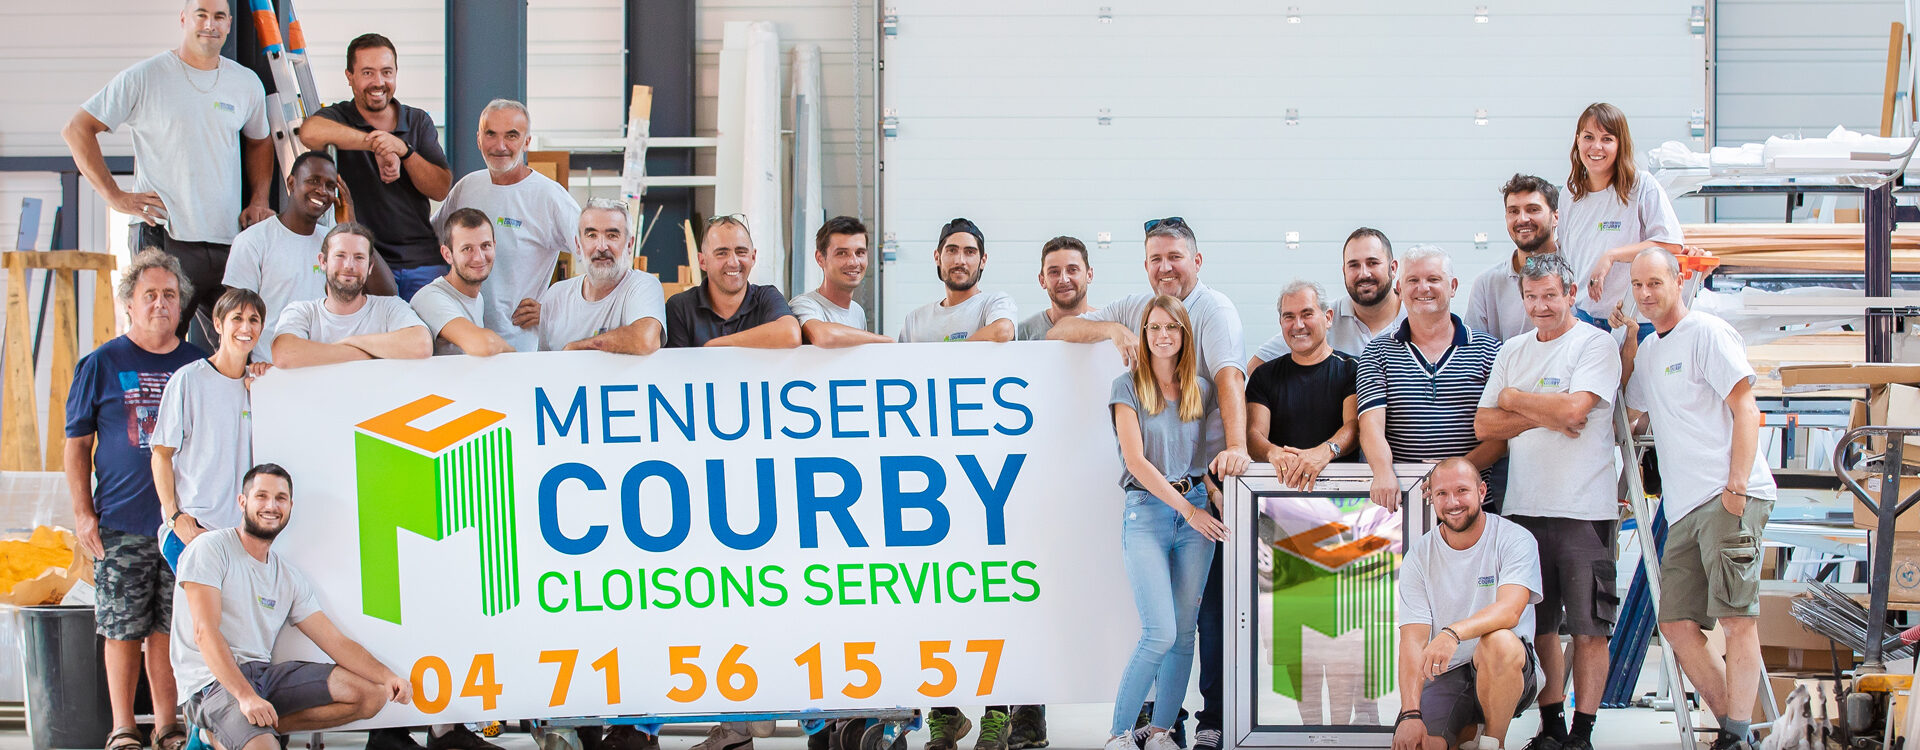 Menuiseries Courby, à votre service depuis 1991, partenaire Club AMCC